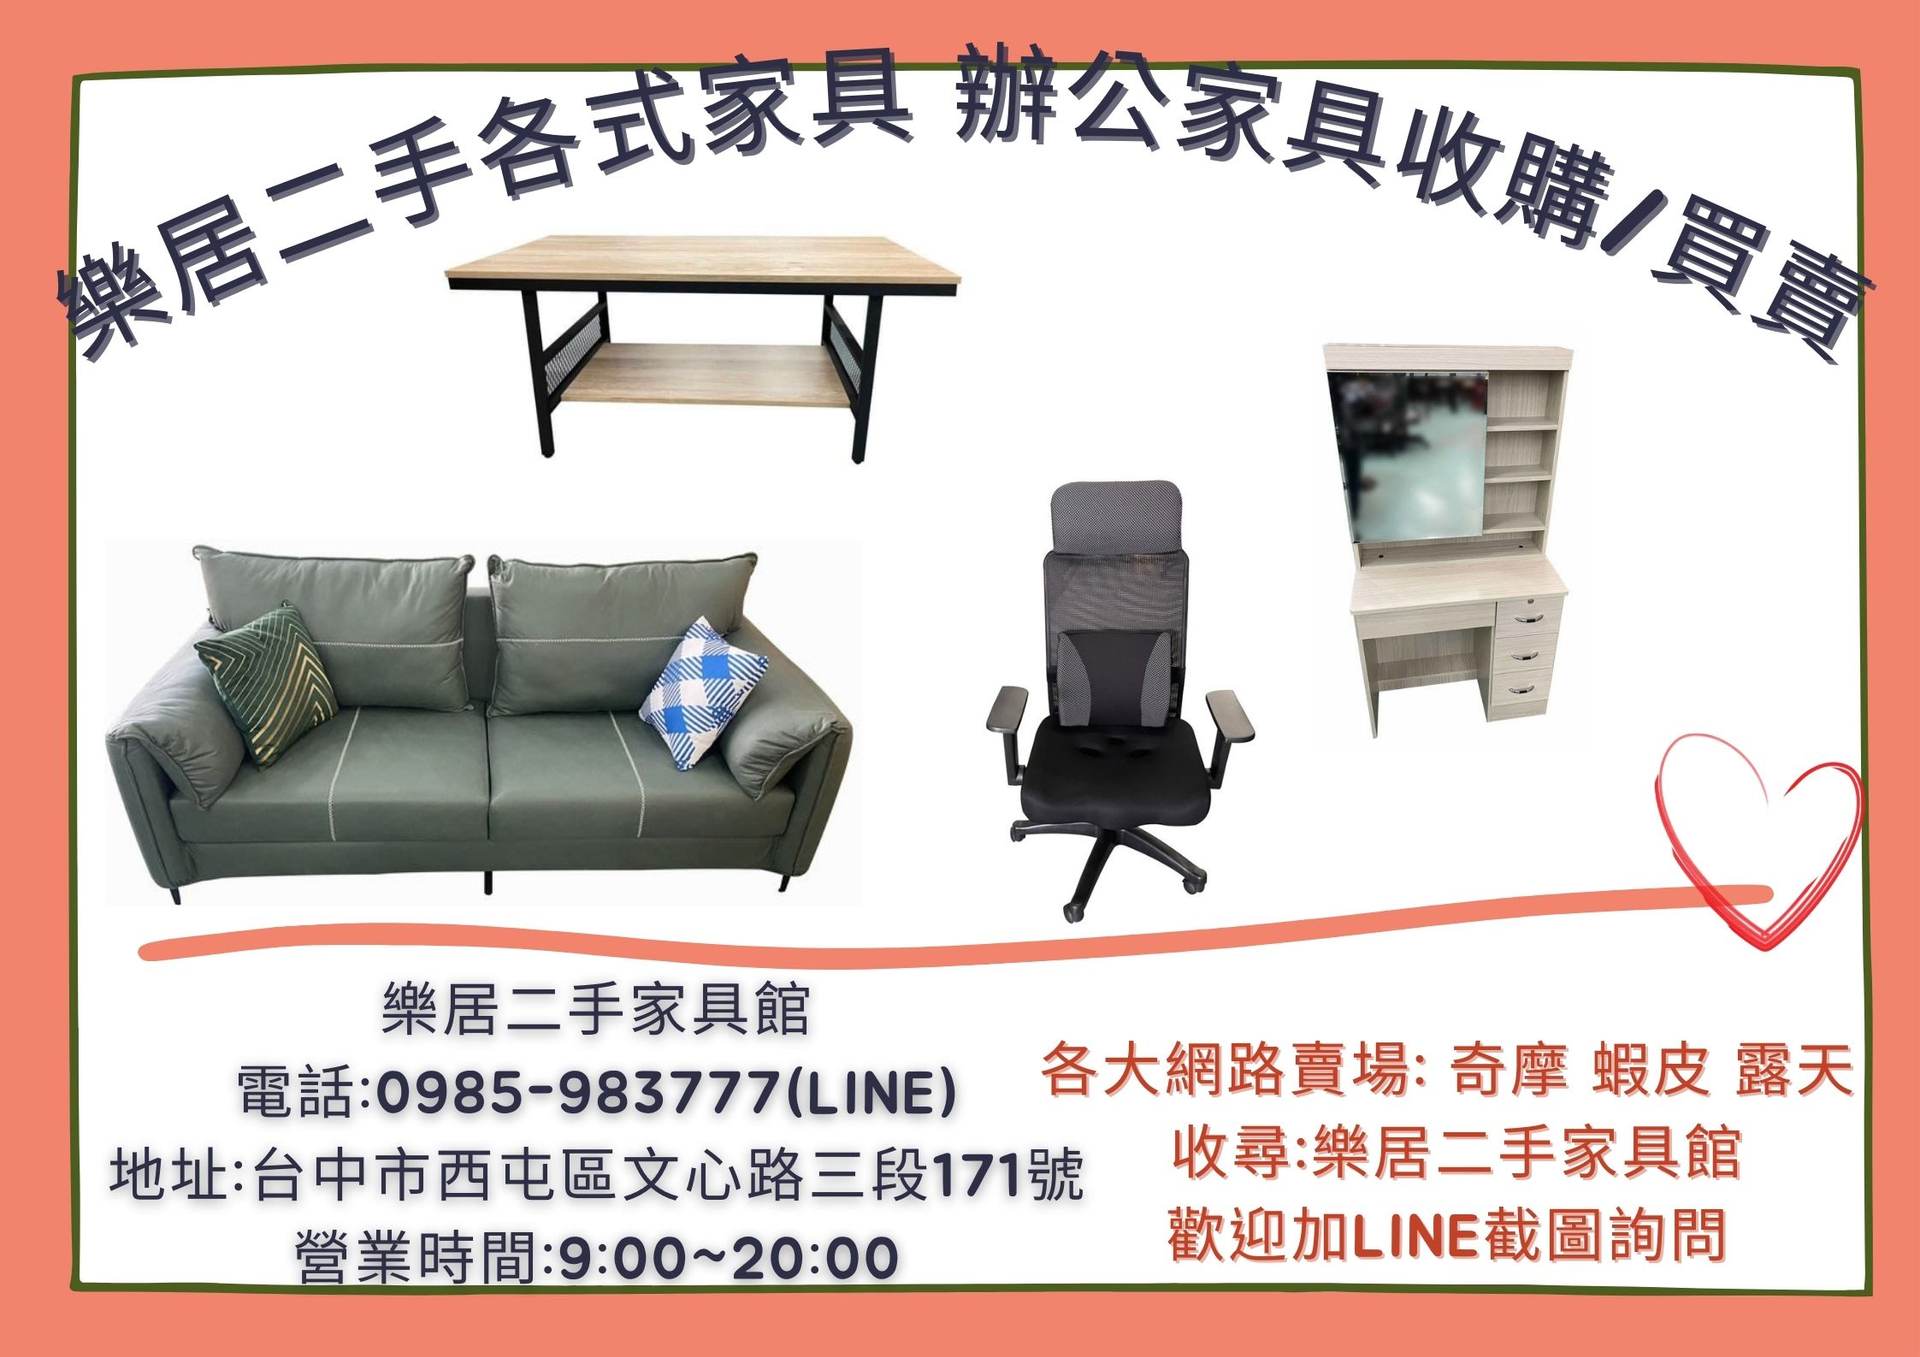 台中樂居 全省專業可靠二手收購 買賣 各式家具